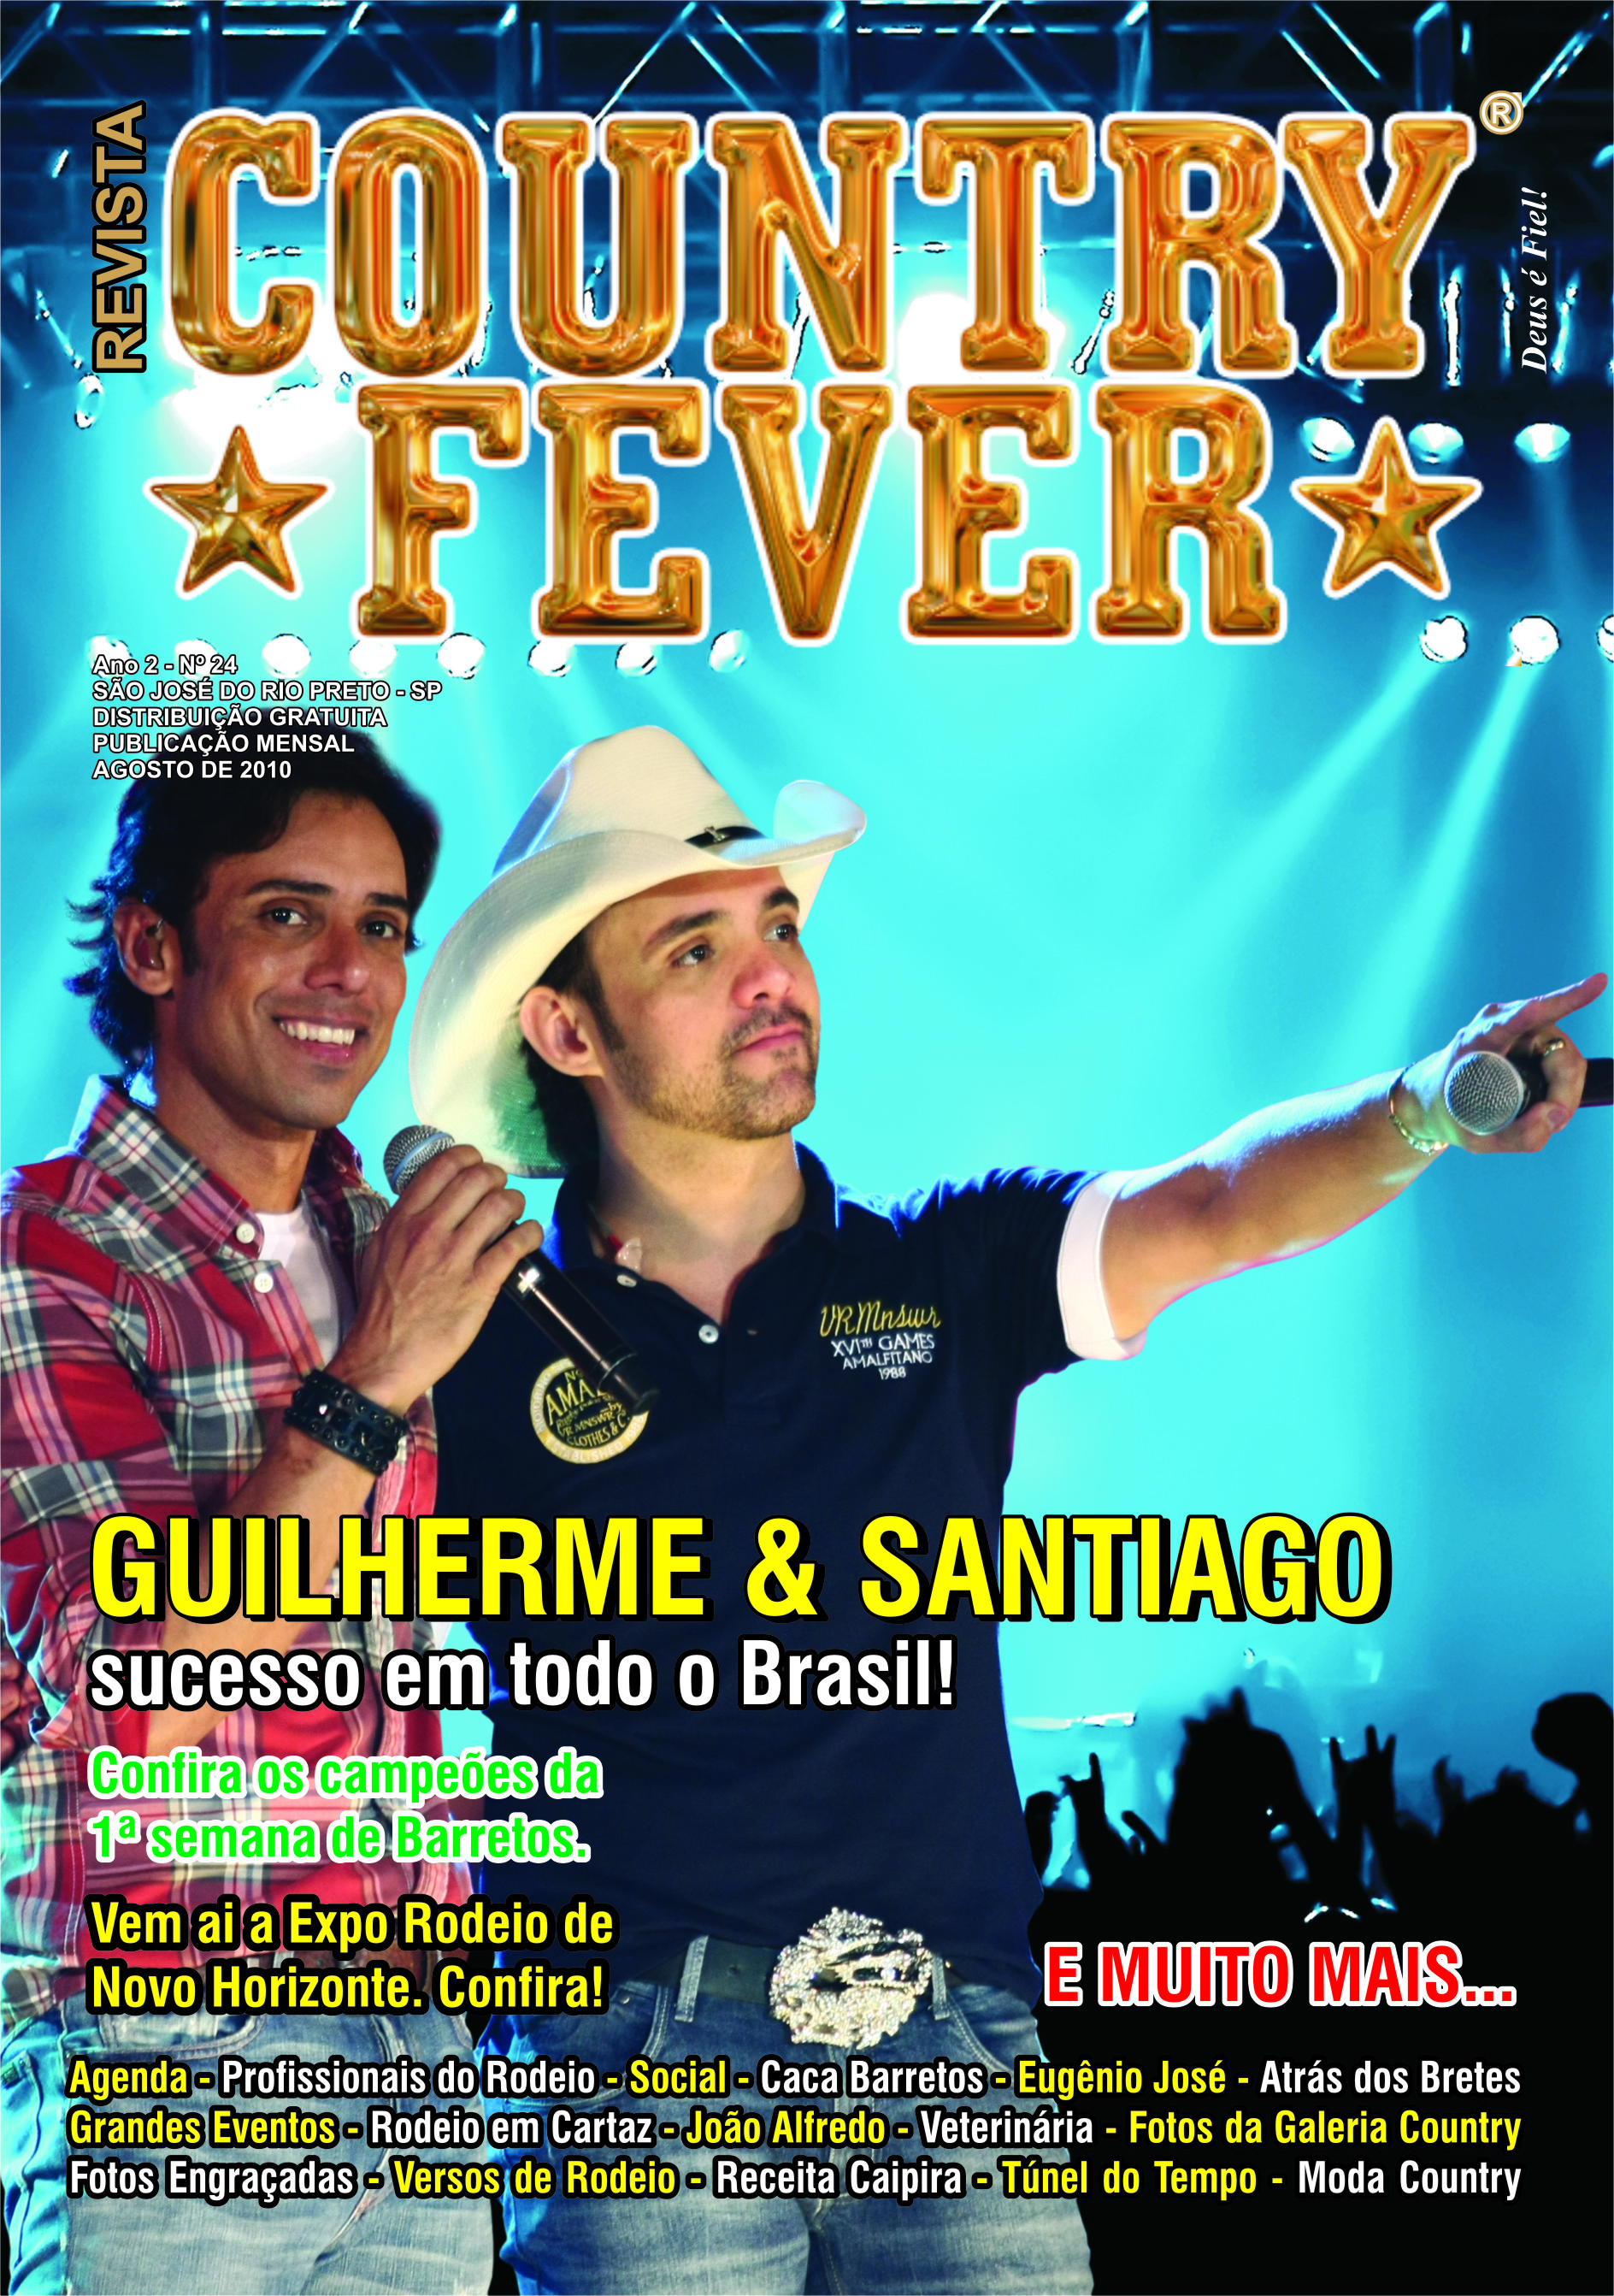 Revista Country Fever - Edição de Agosto de 2010